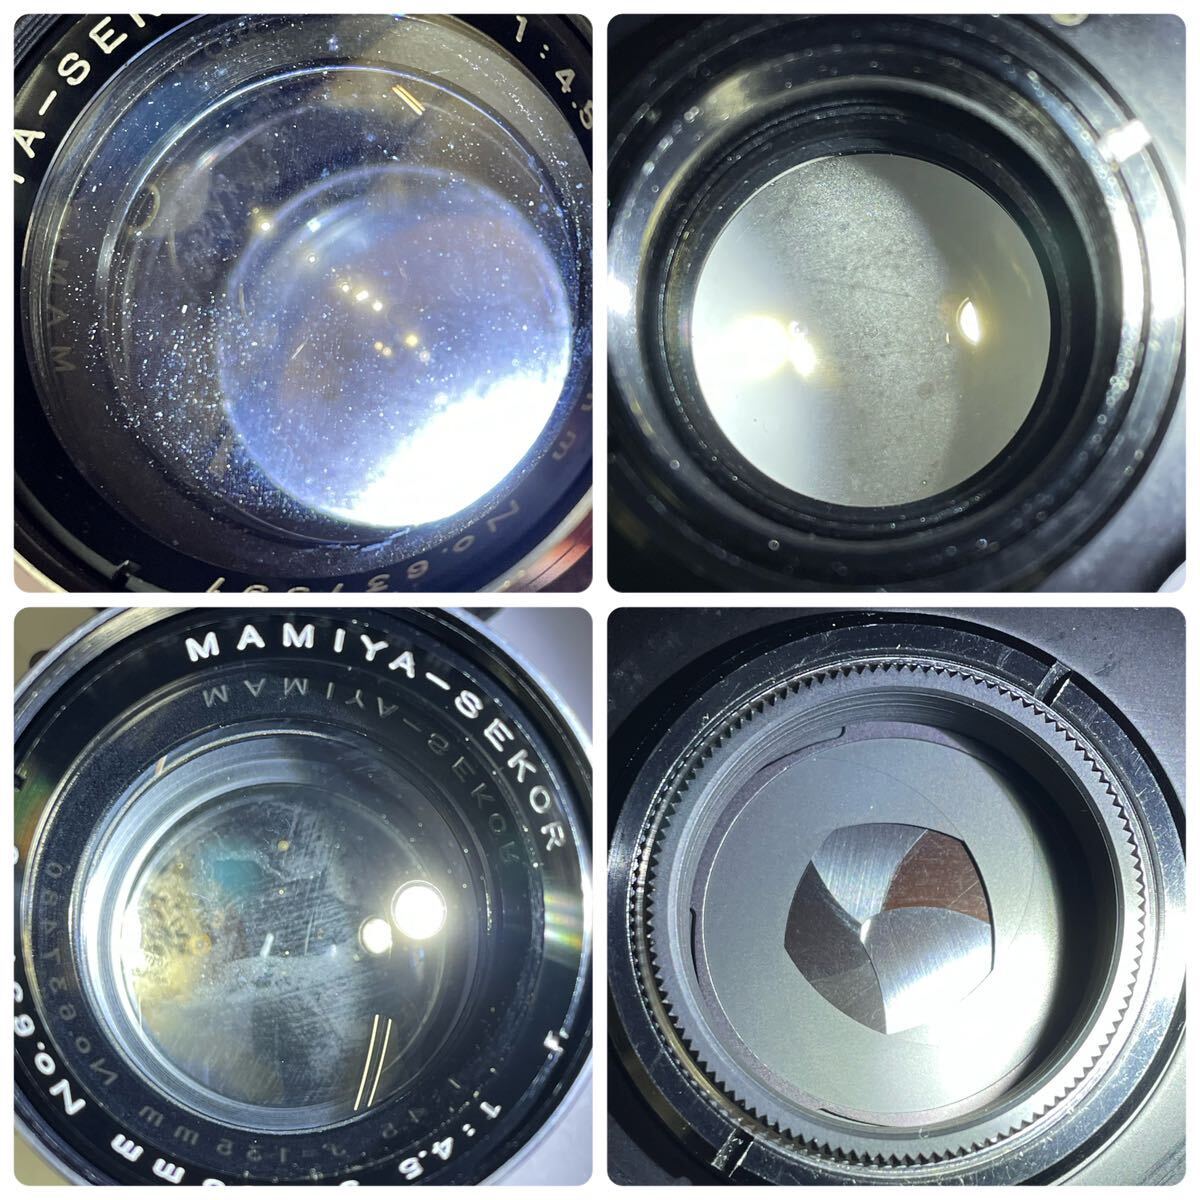 □ Mamiya C220 professional ボディ 二眼レフカメラ フィルムカメラ MAMIYA-SEKOR 135mm F4.5 レンズ シャッターOK マミヤ